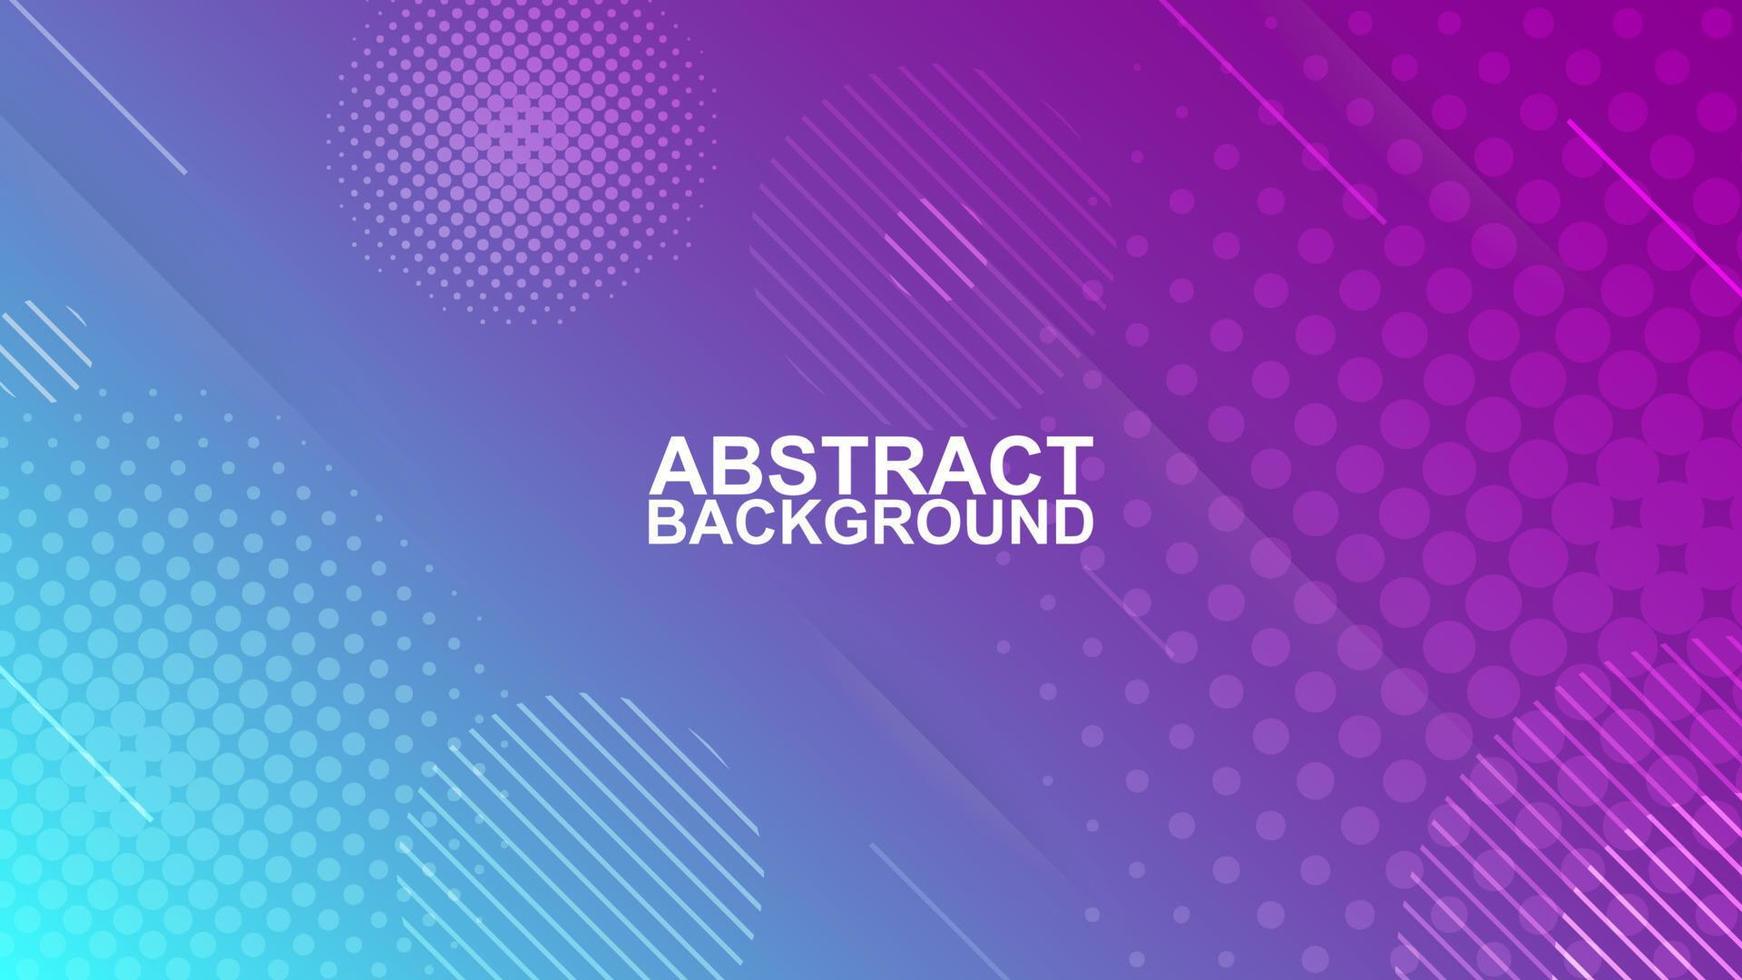 abstract modern elegant ontwerp achtergrond met lijn en halftone vorm in licht blauw en Purper kleur vector illustraties eps10